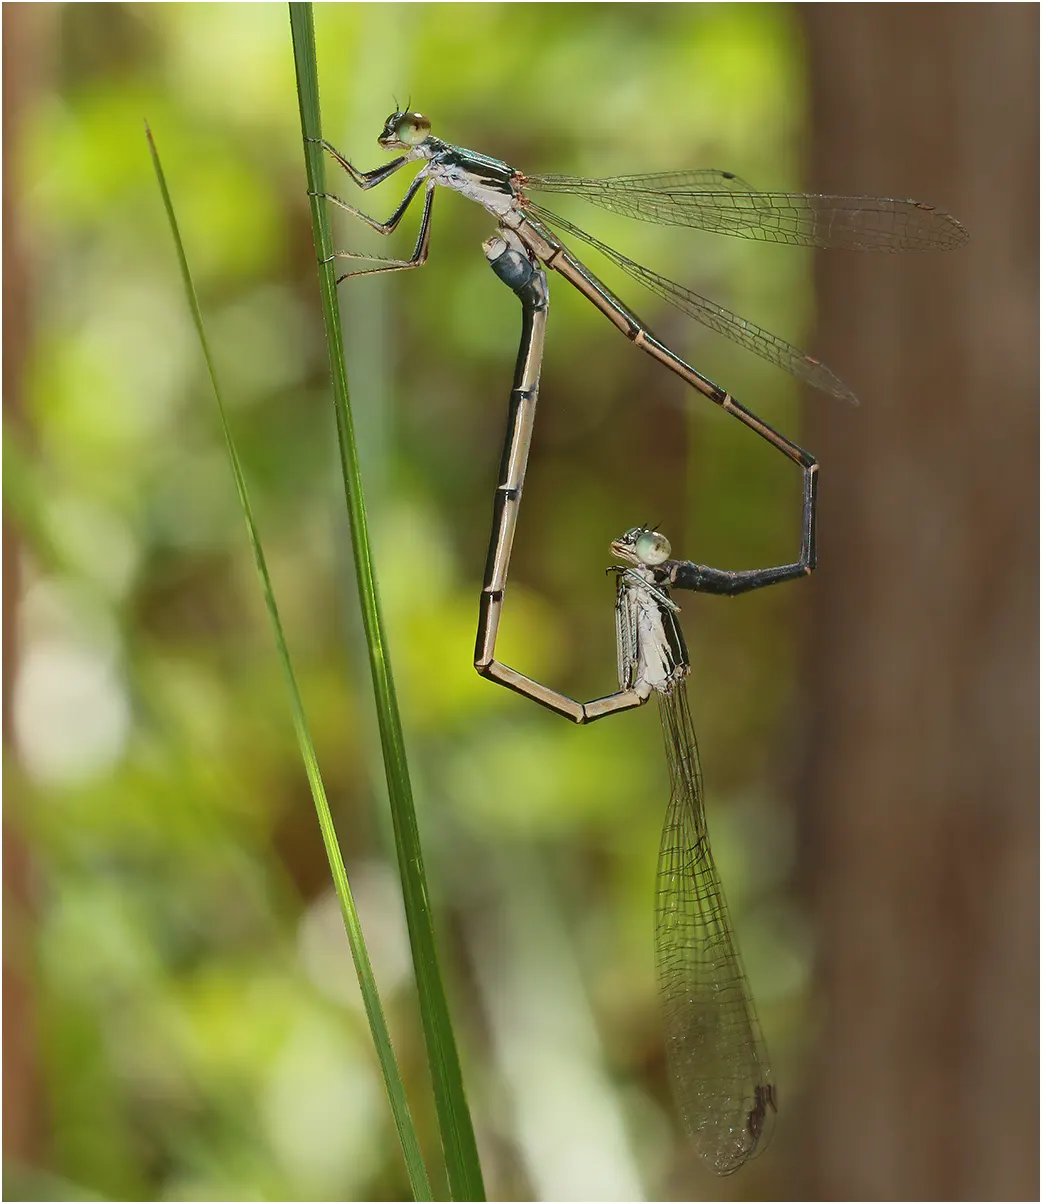 Rock narrow-wing mating, Australie (NT), Anbangbang, 02/05/2022